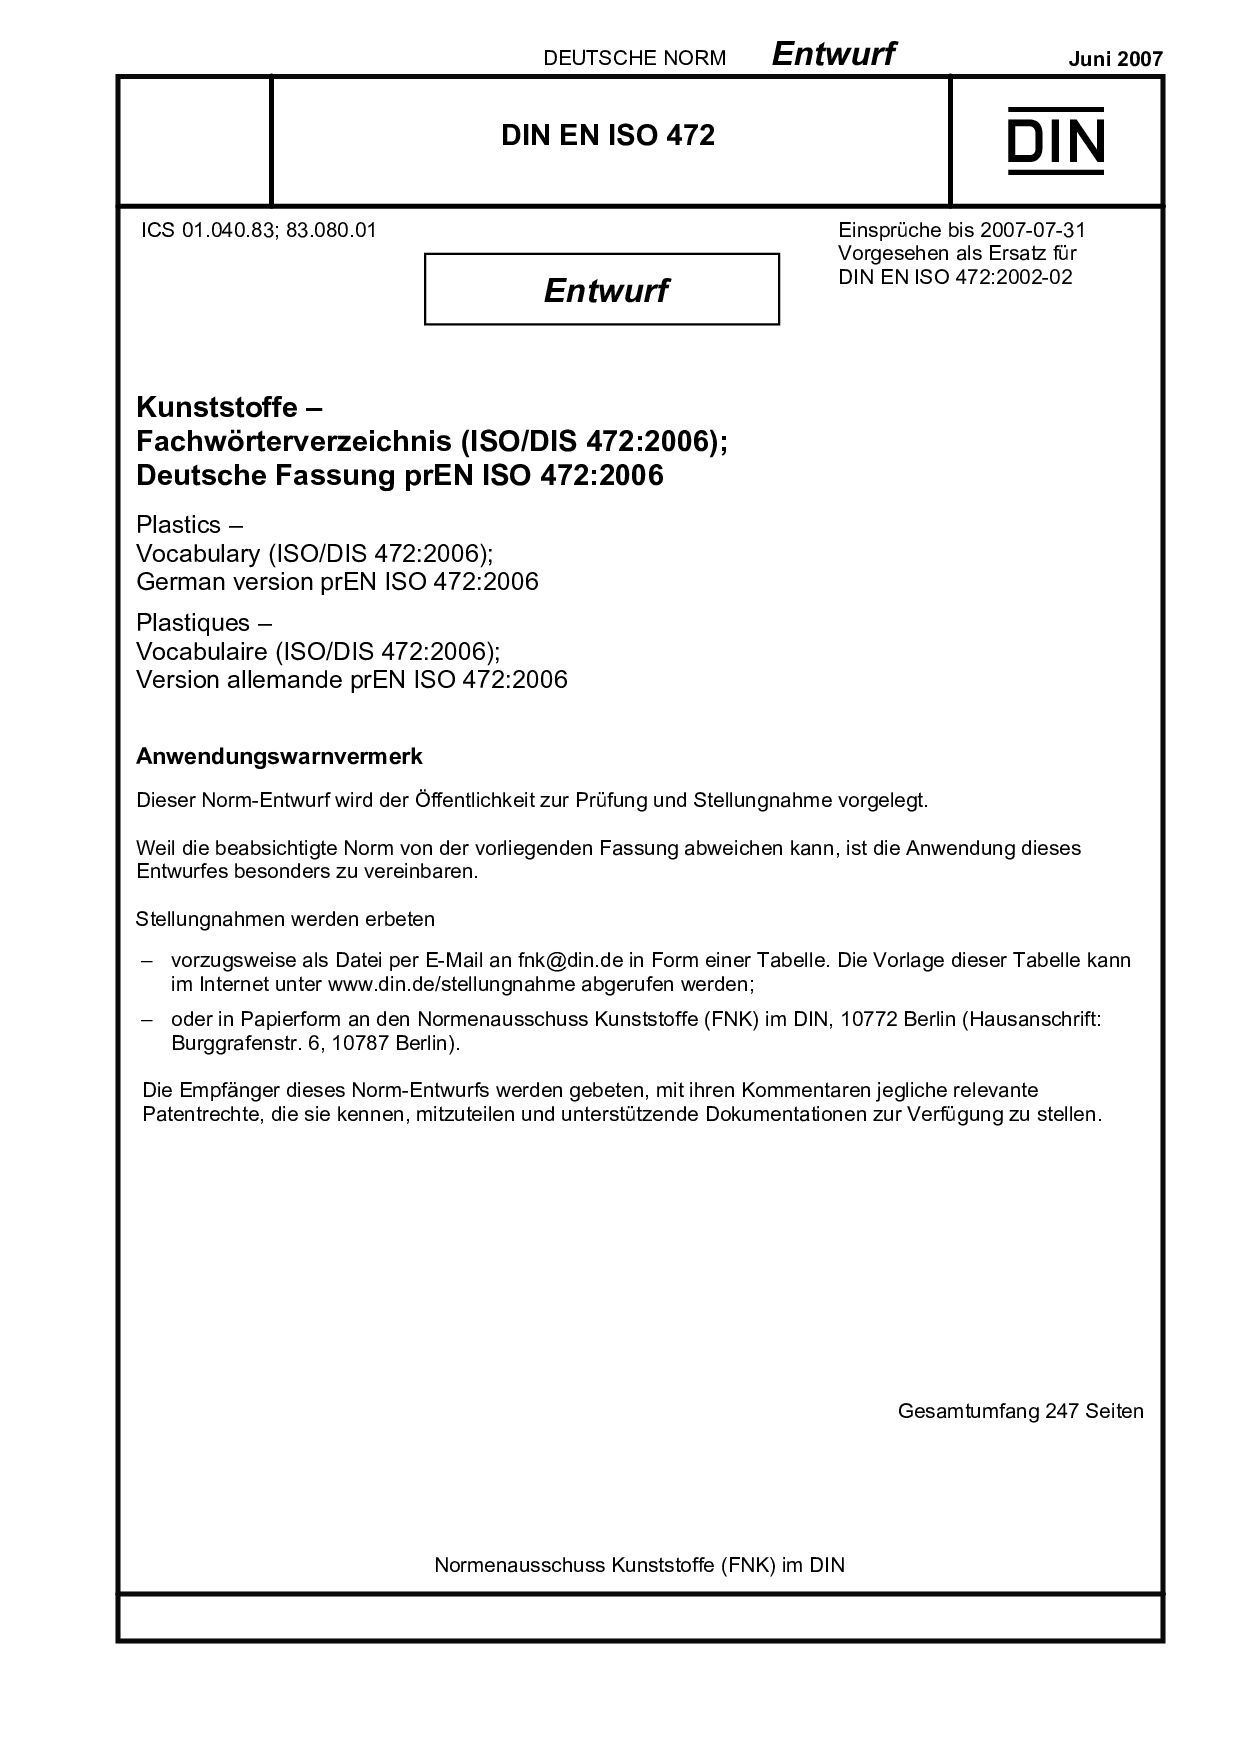 DIN EN ISO 472 E:2007-06封面图